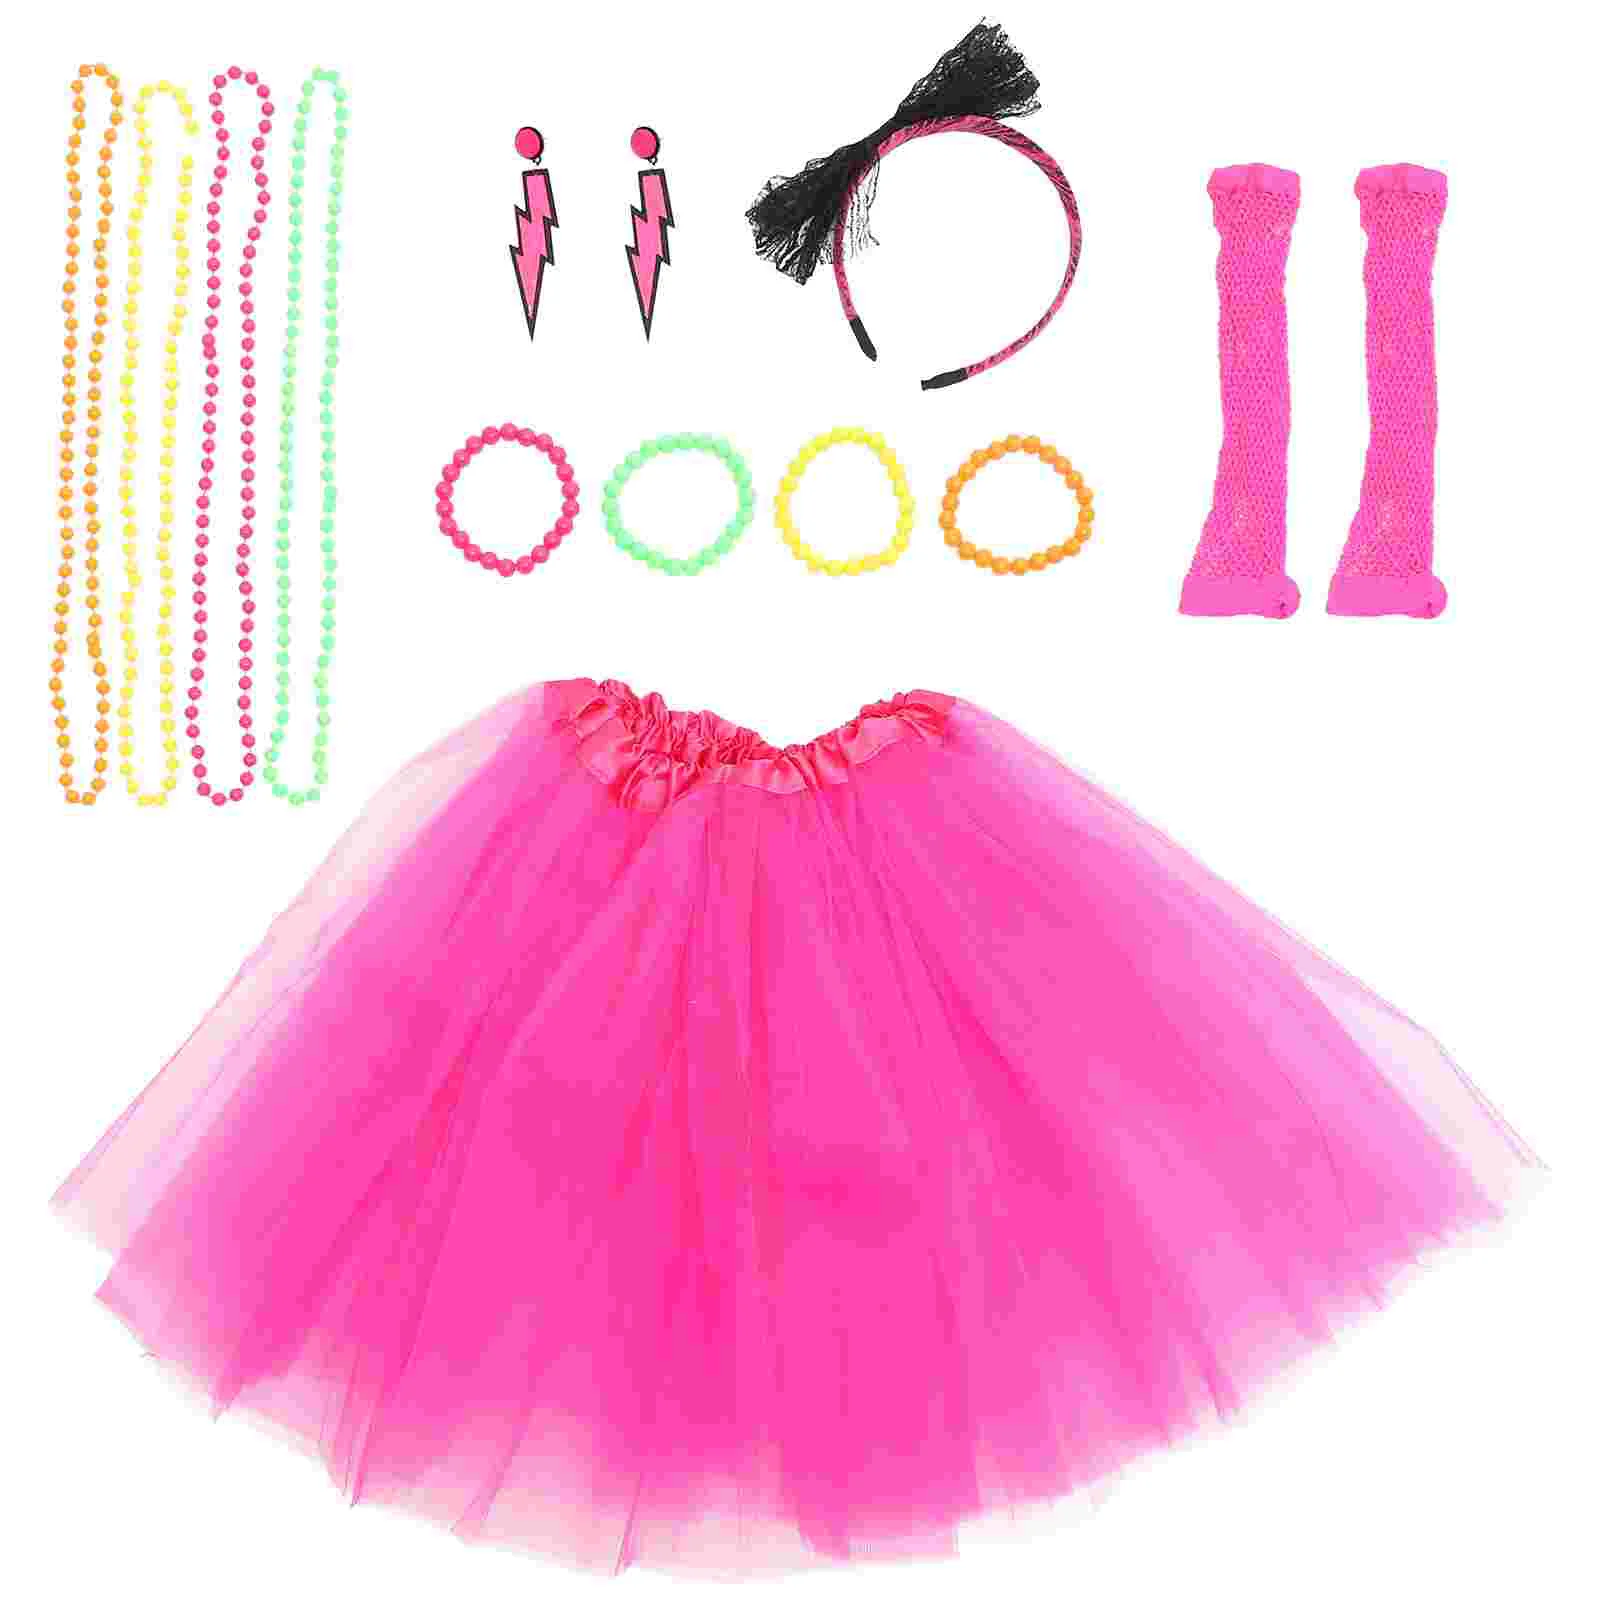 

Юбка-пачка в стиле 80-х, косплей, перчатки, декоративный комплект, костюмы для женских танцев, представлений, аксессуары из полиэстера, браслет, ожерелье, серьги